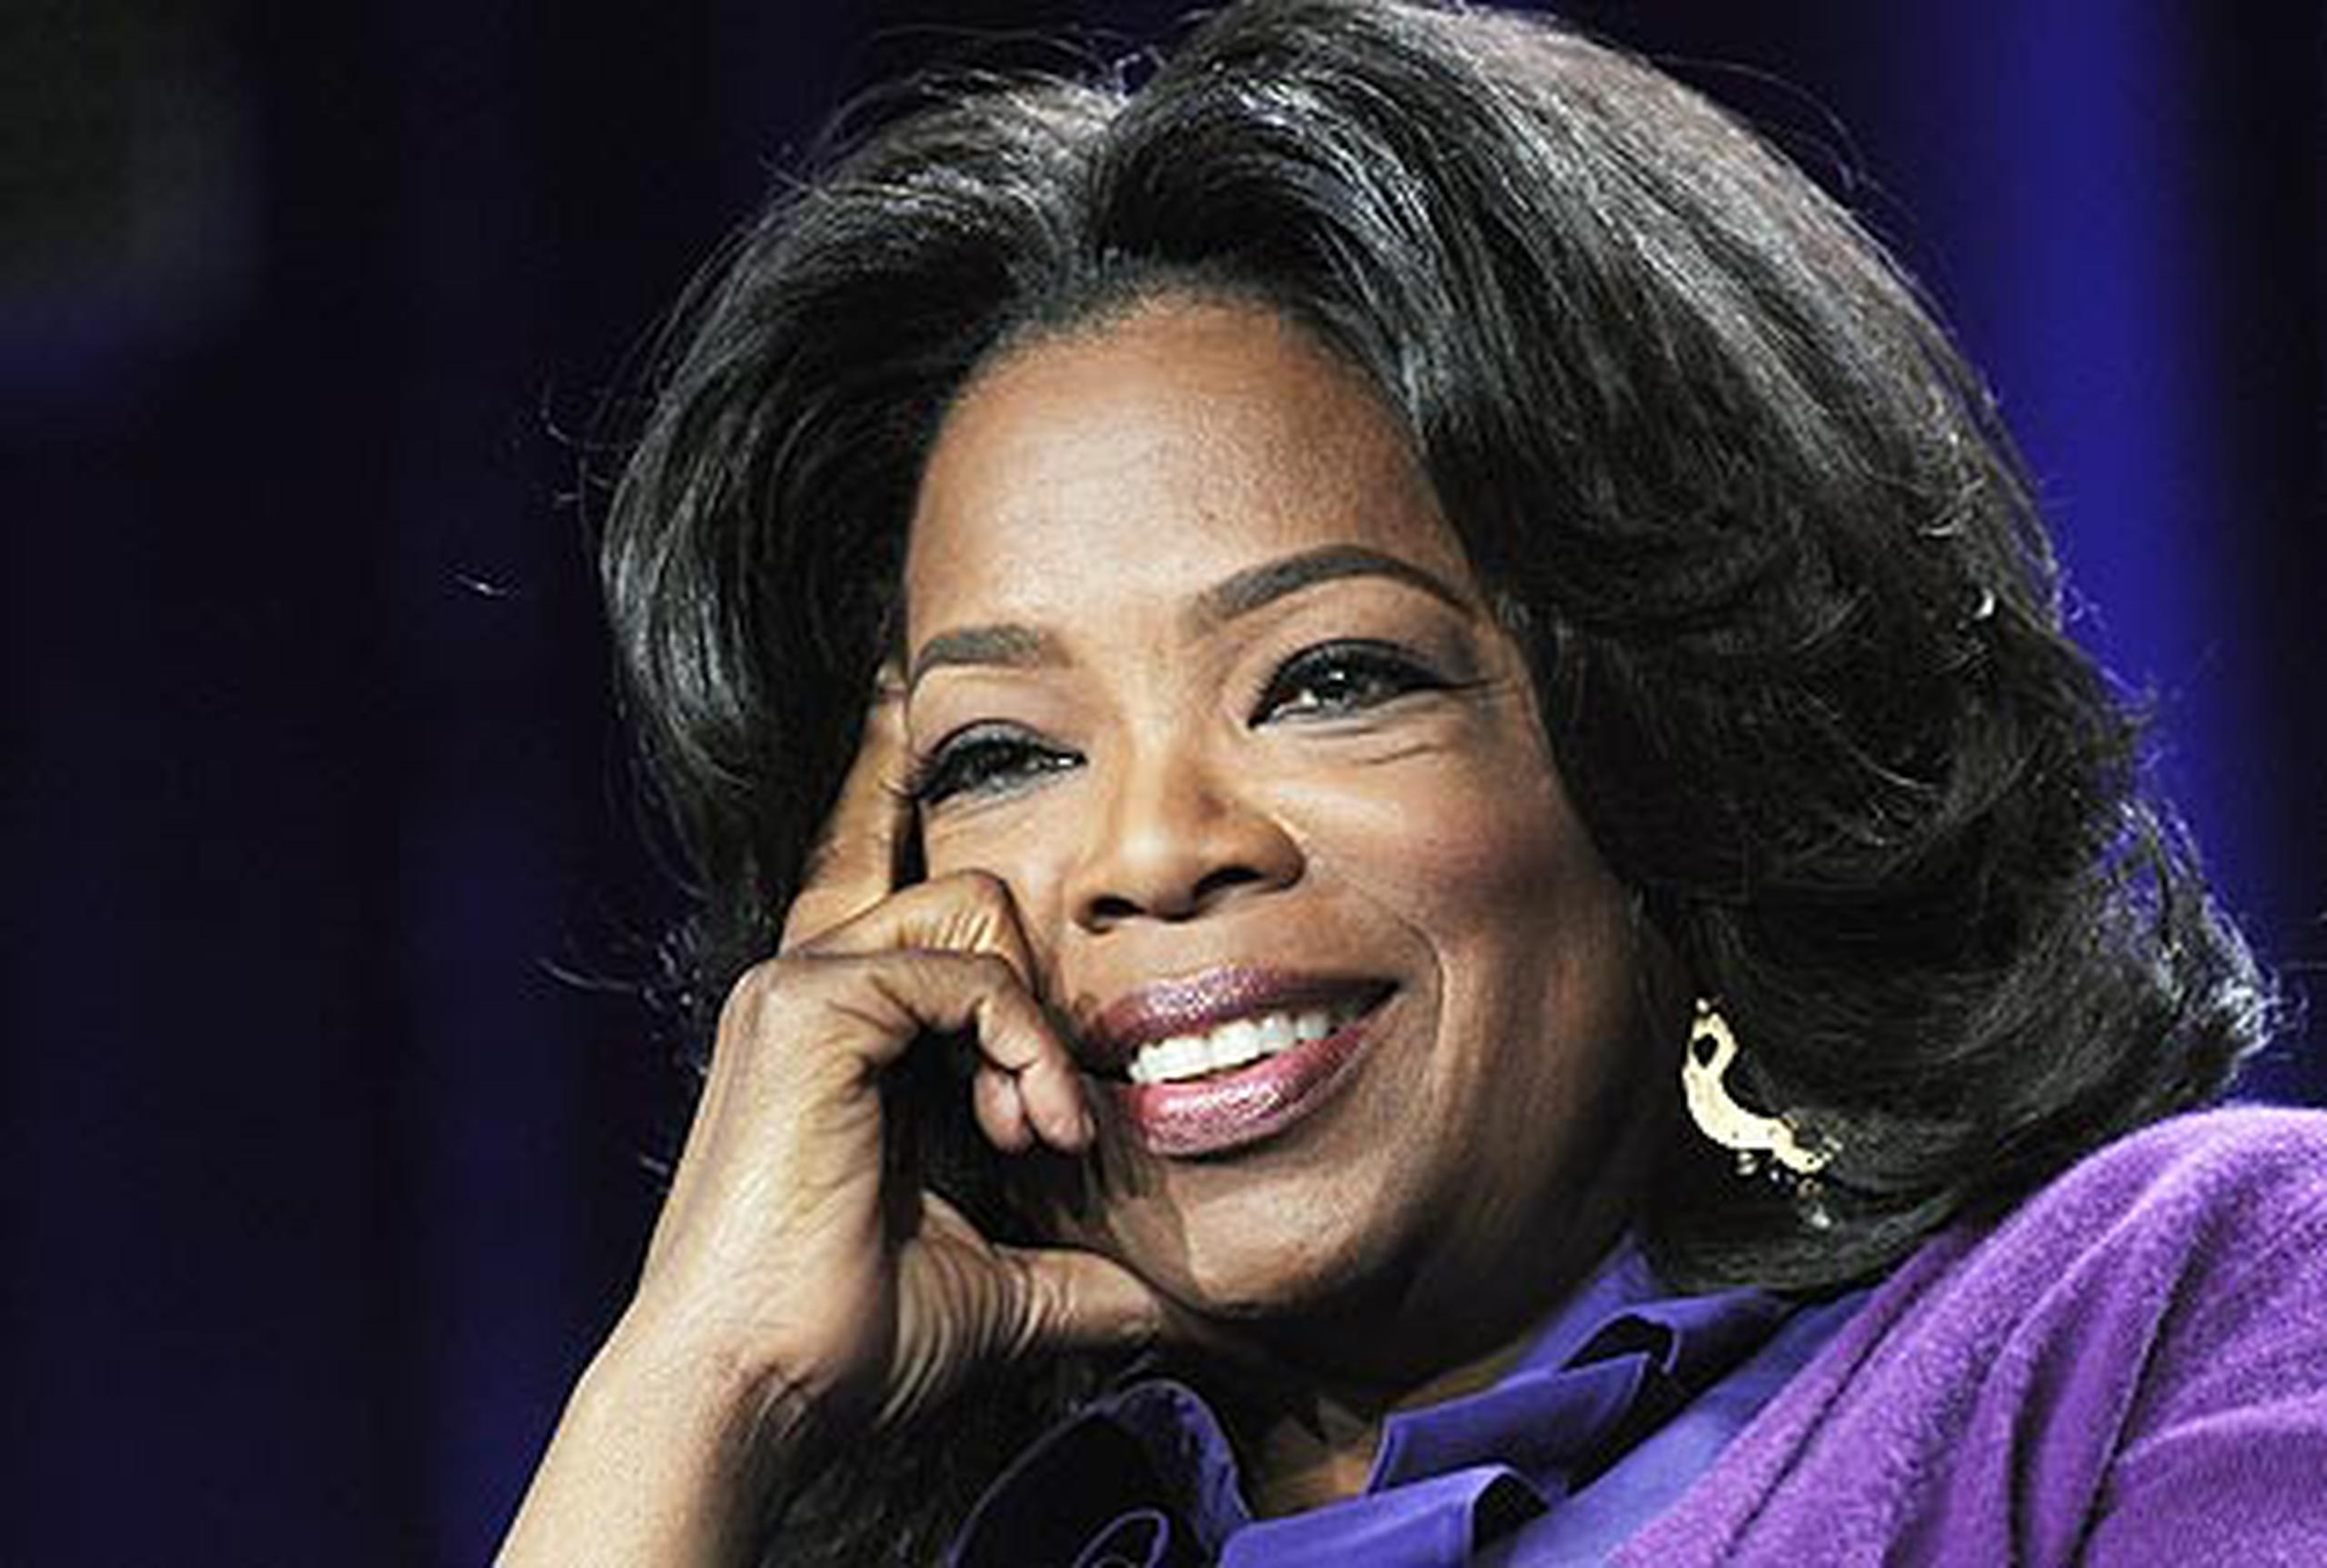 El programa de Oprah Winfrey le quedan 16 episodios por transmitir. El 23 y el 24 de mayo sus productores planean presentar el antepenúltimo y penúltimo episodio. (Archivo / AP)